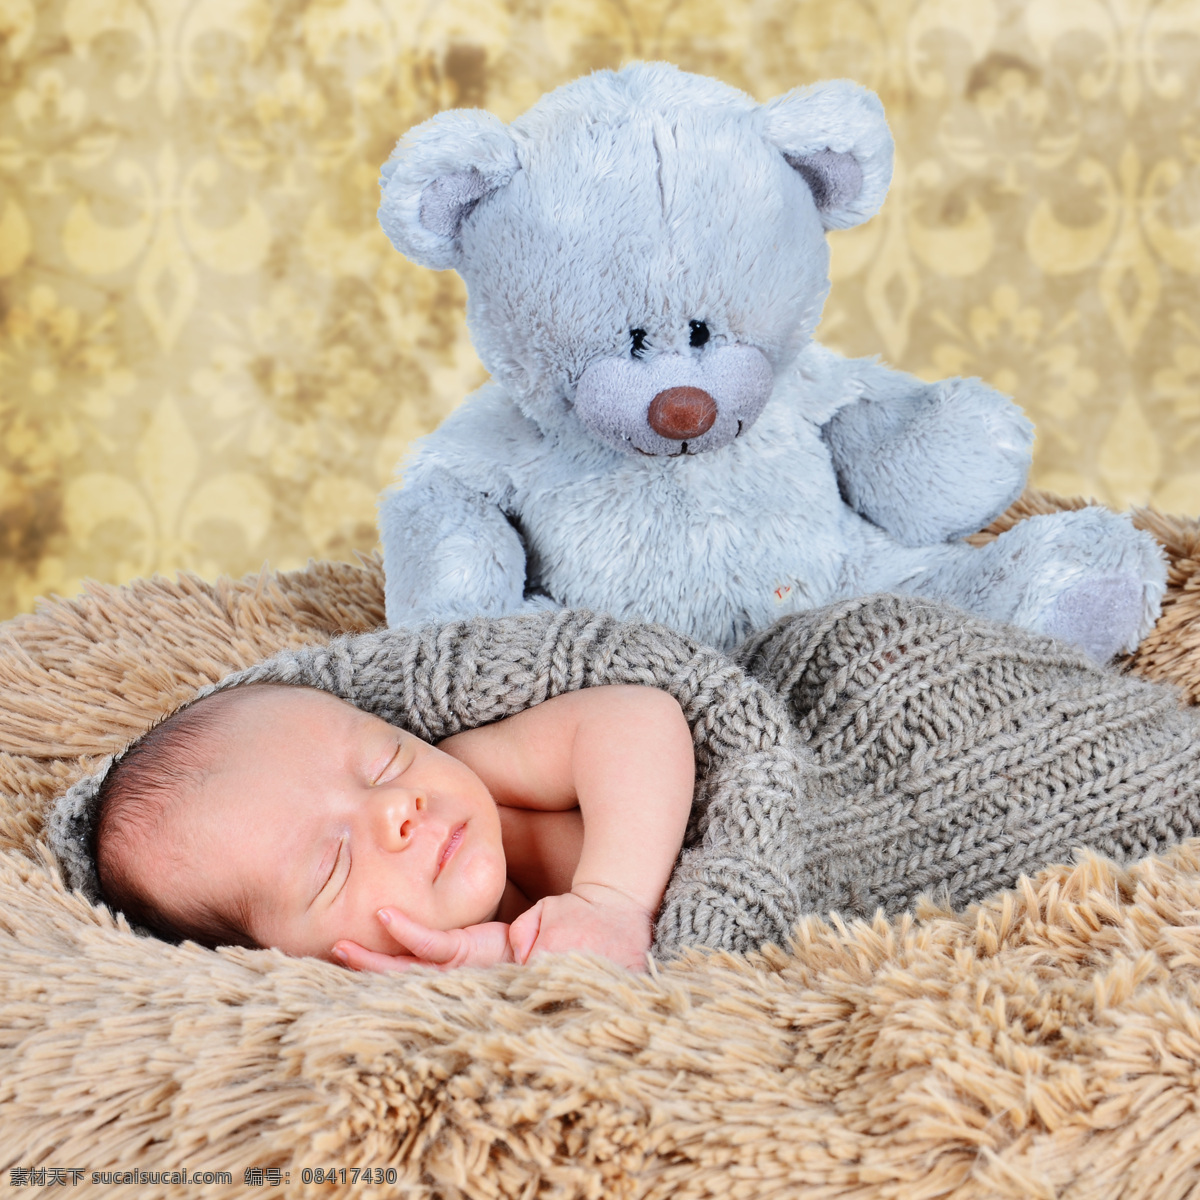 玩具 熊 熟睡 婴儿 玩具熊 毛毯 儿童图片 人物图片